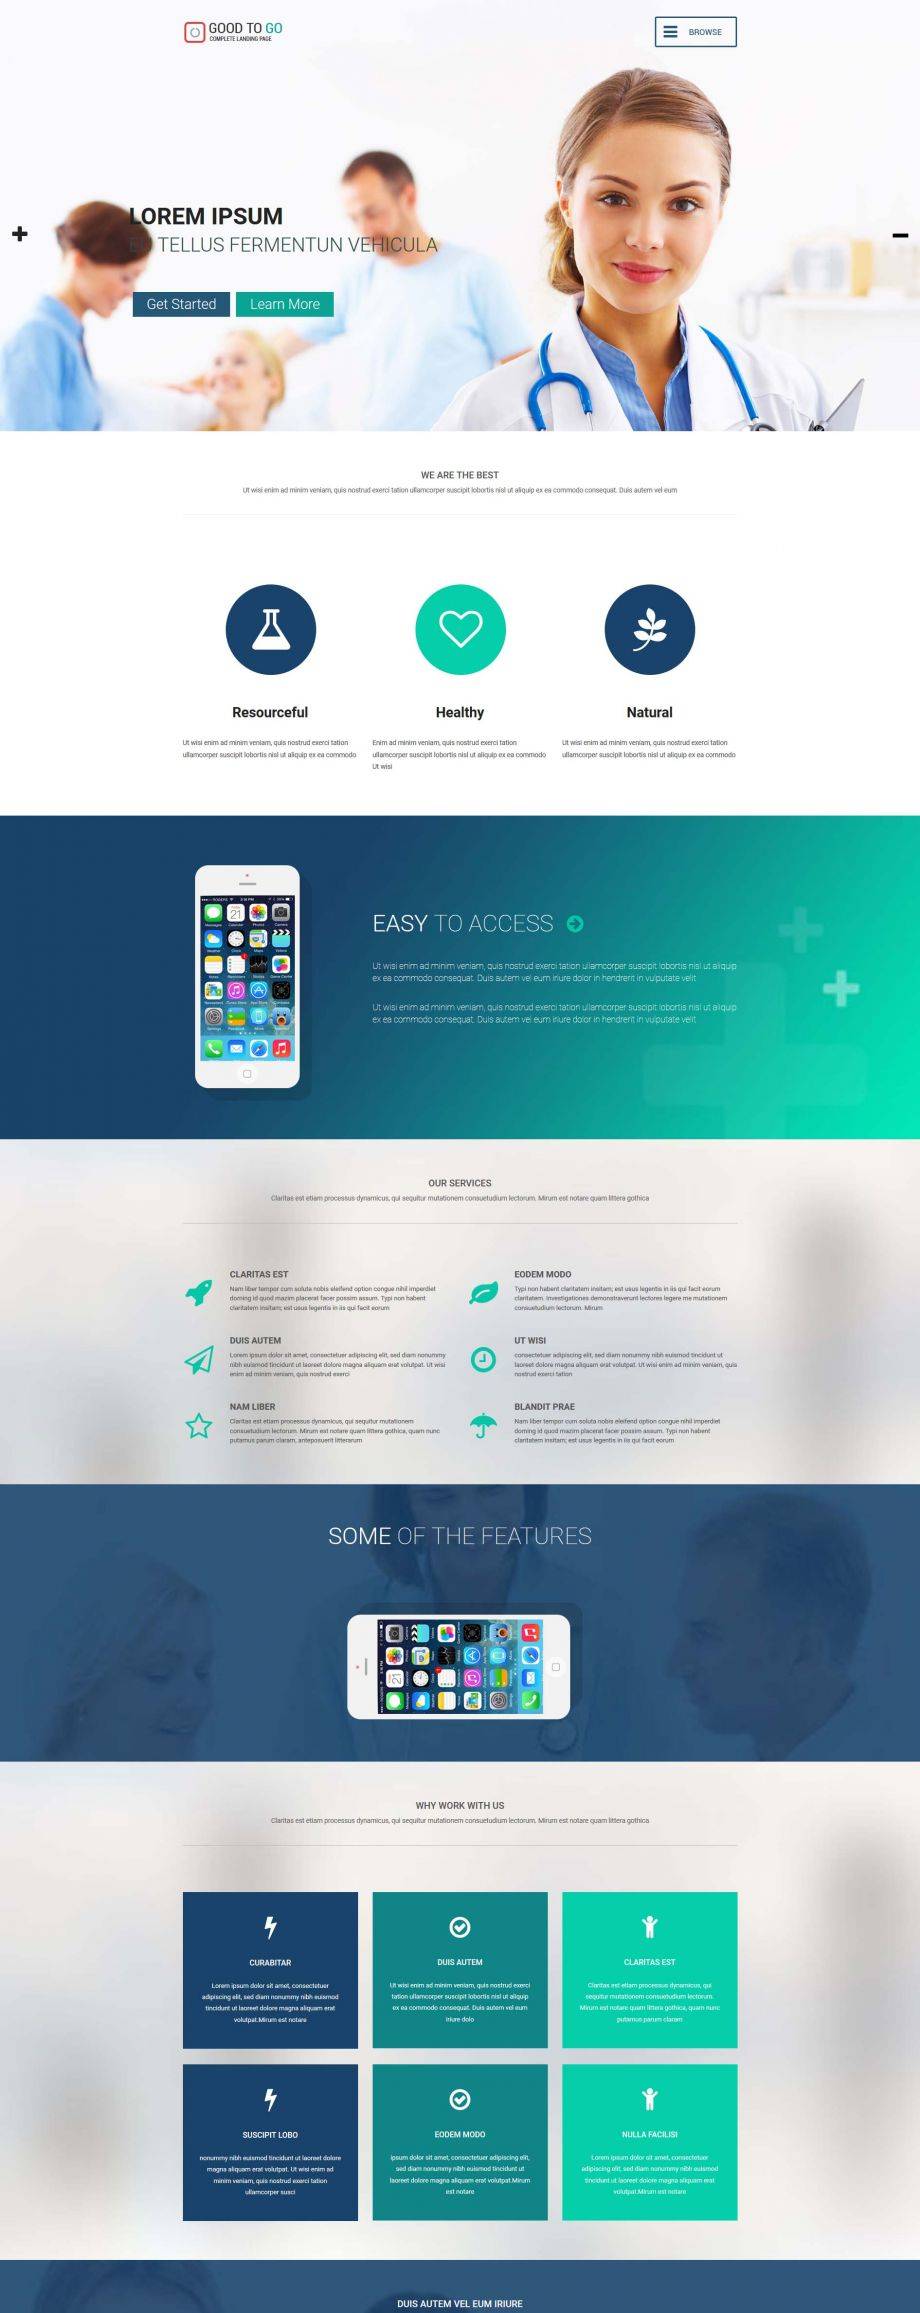 蓝色简洁风格的医疗APP介绍整站网站模板